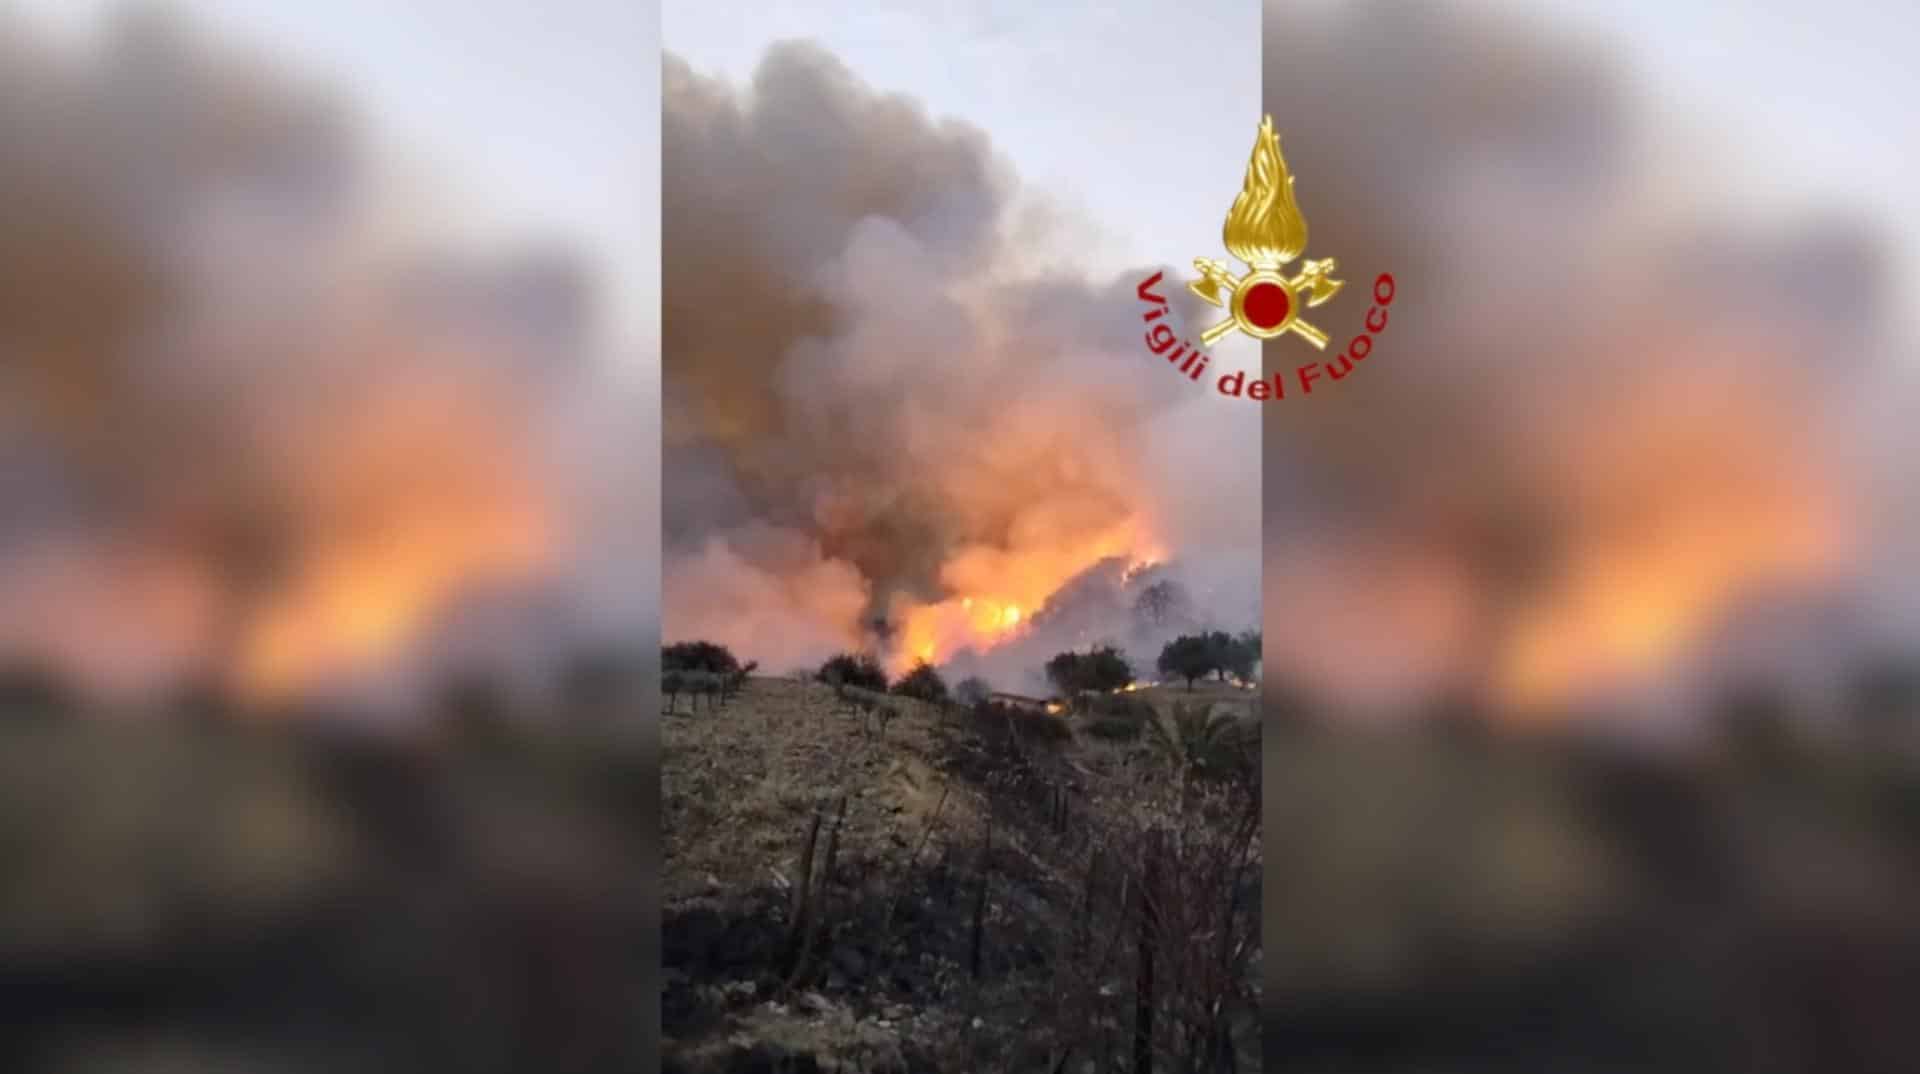 Sicilia, ennesima notte di lavoro a causa incendi: stalle in fiamme e case evacuate – FOTO e VIDEO